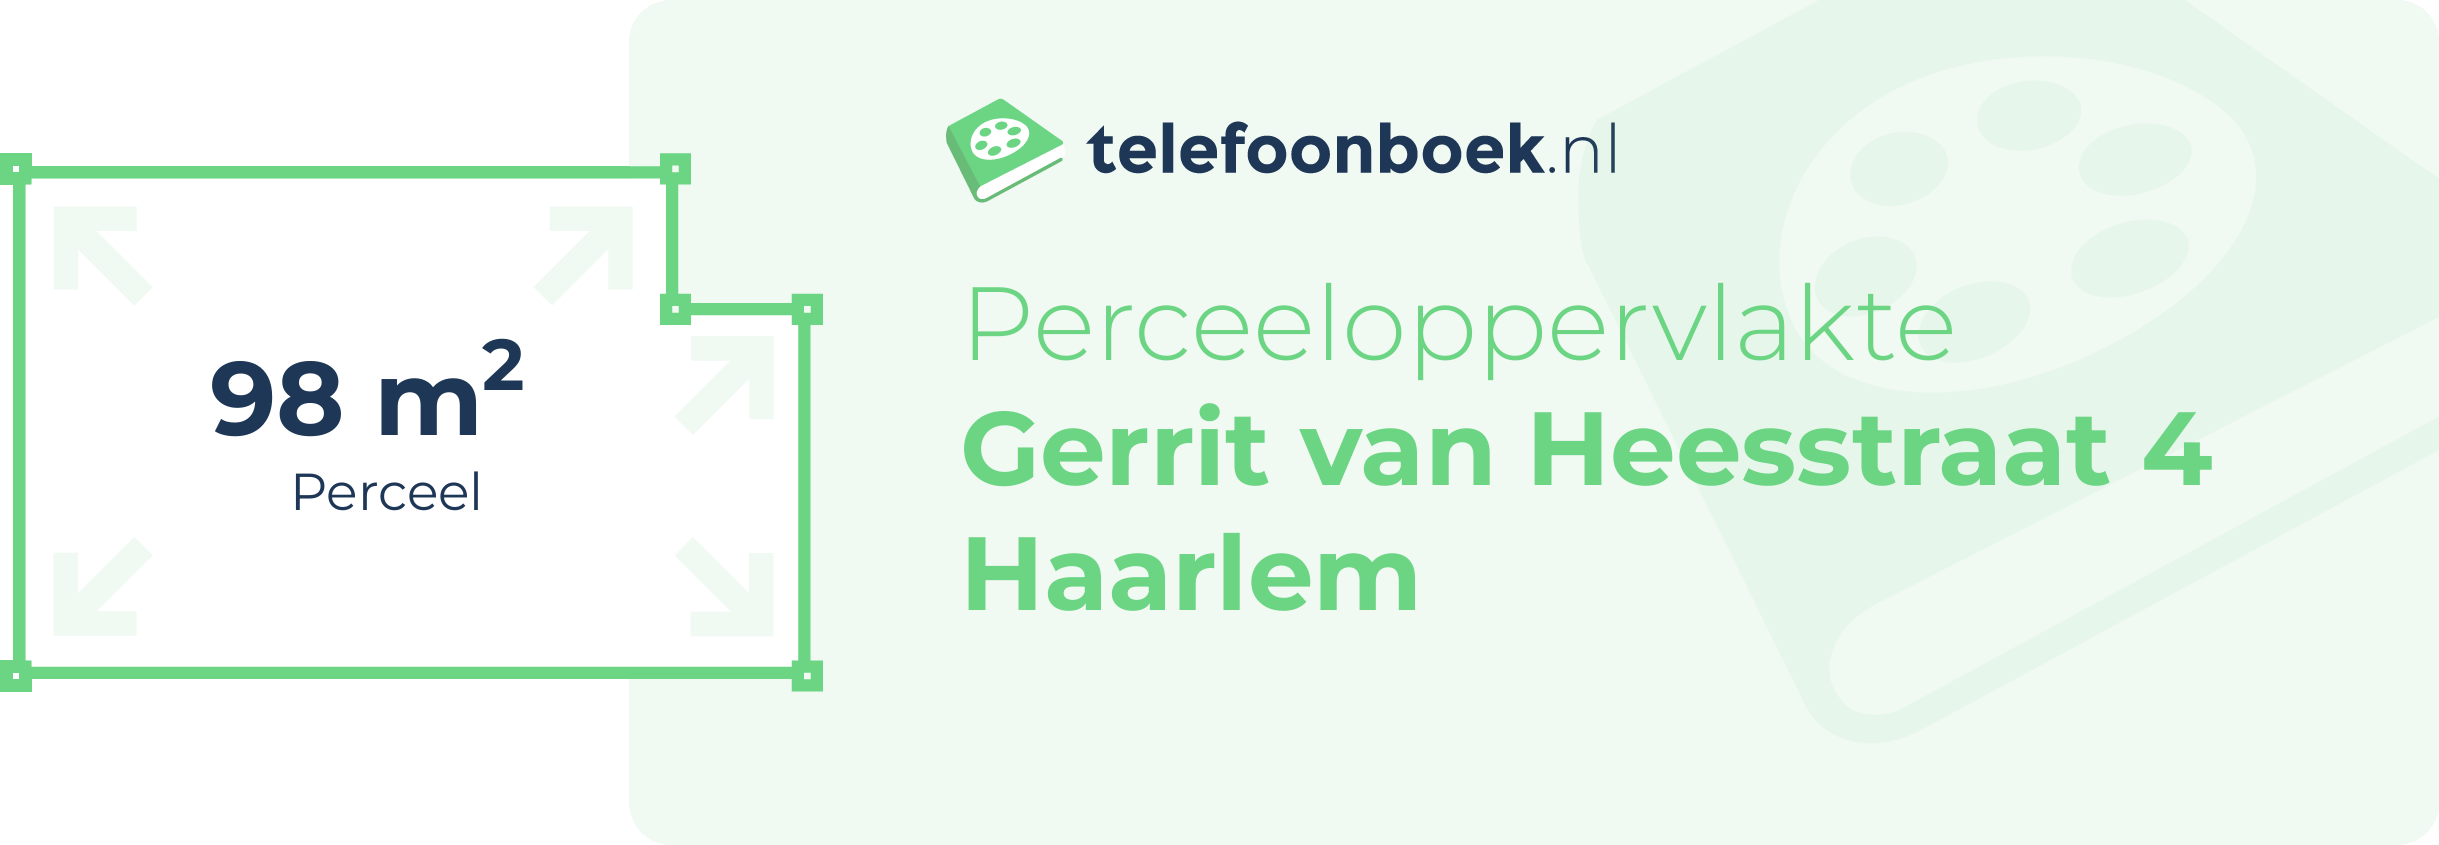 Perceeloppervlakte Gerrit Van Heesstraat 4 Haarlem